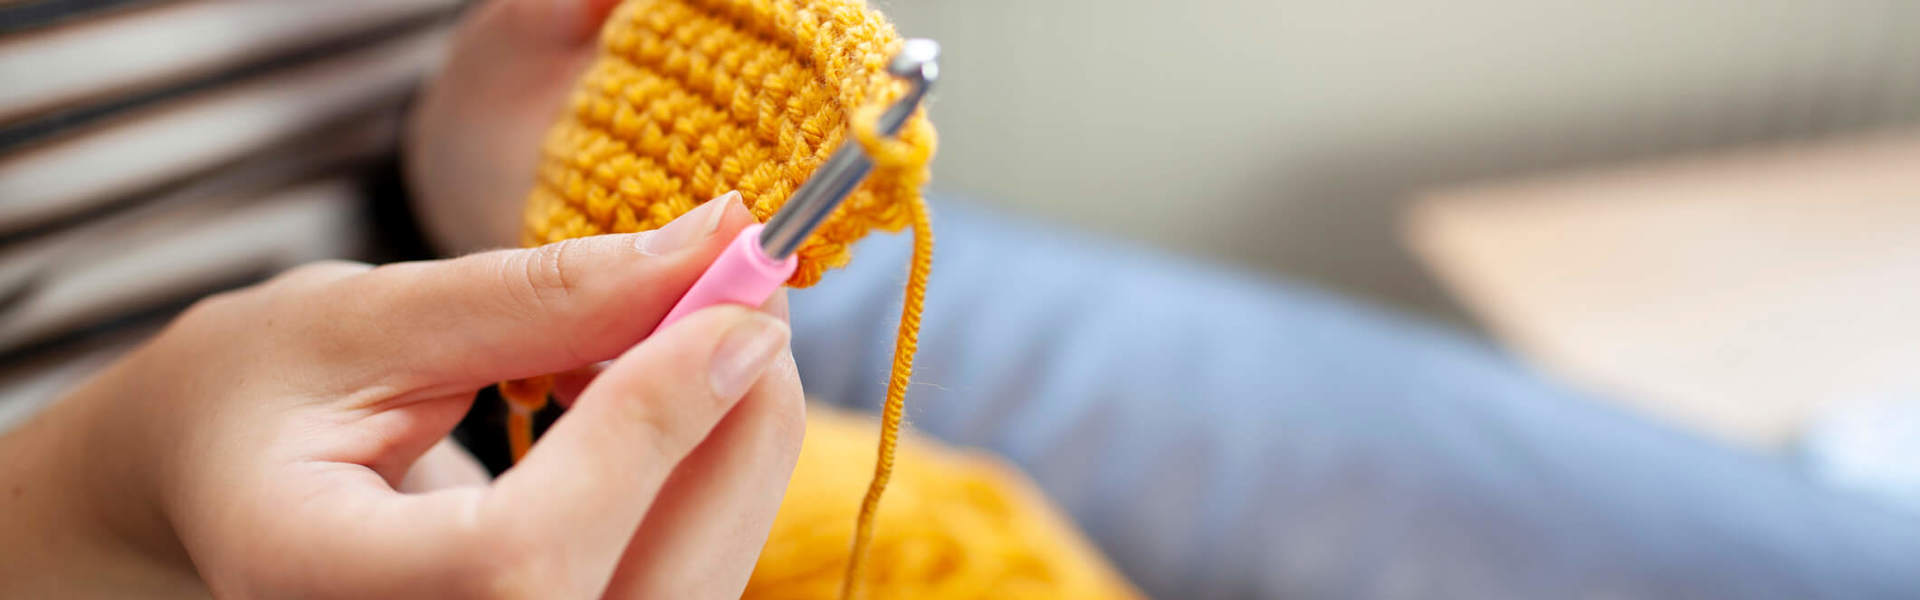 a close up of a crochet hook making a yellow garment